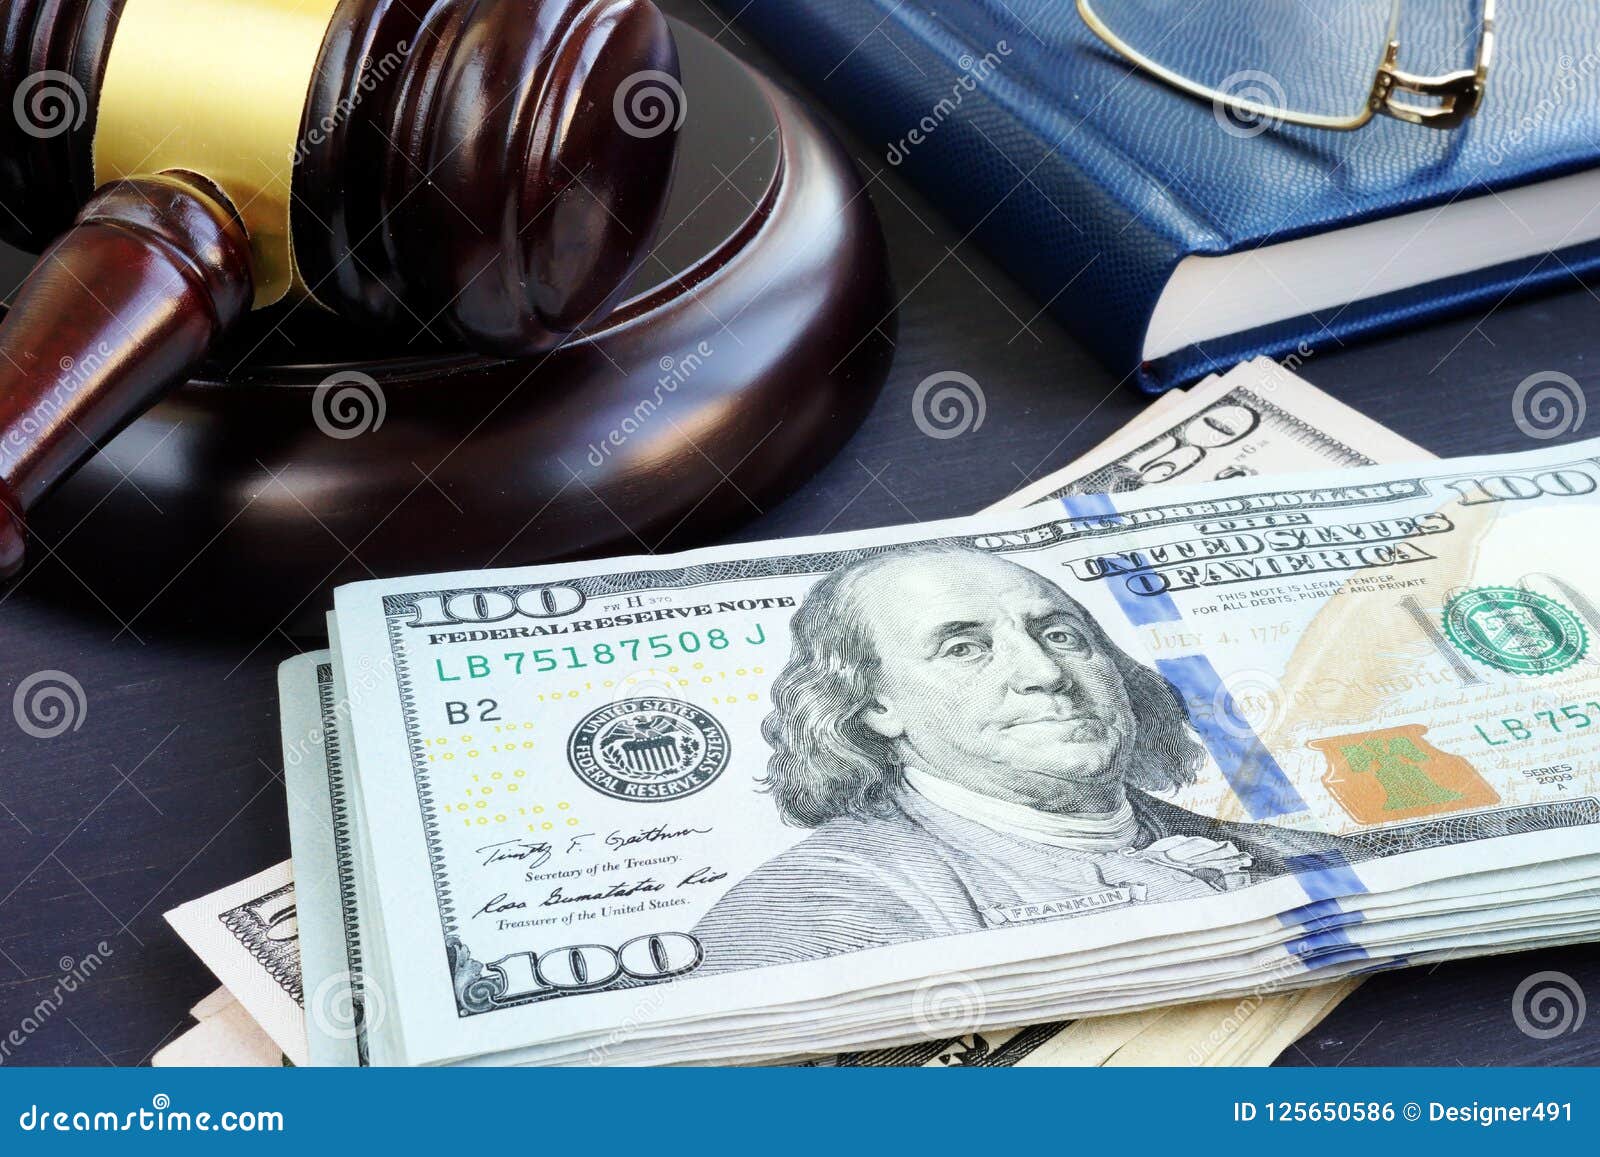 litigation finance. gavel and dollar banknotes. bail bonds.